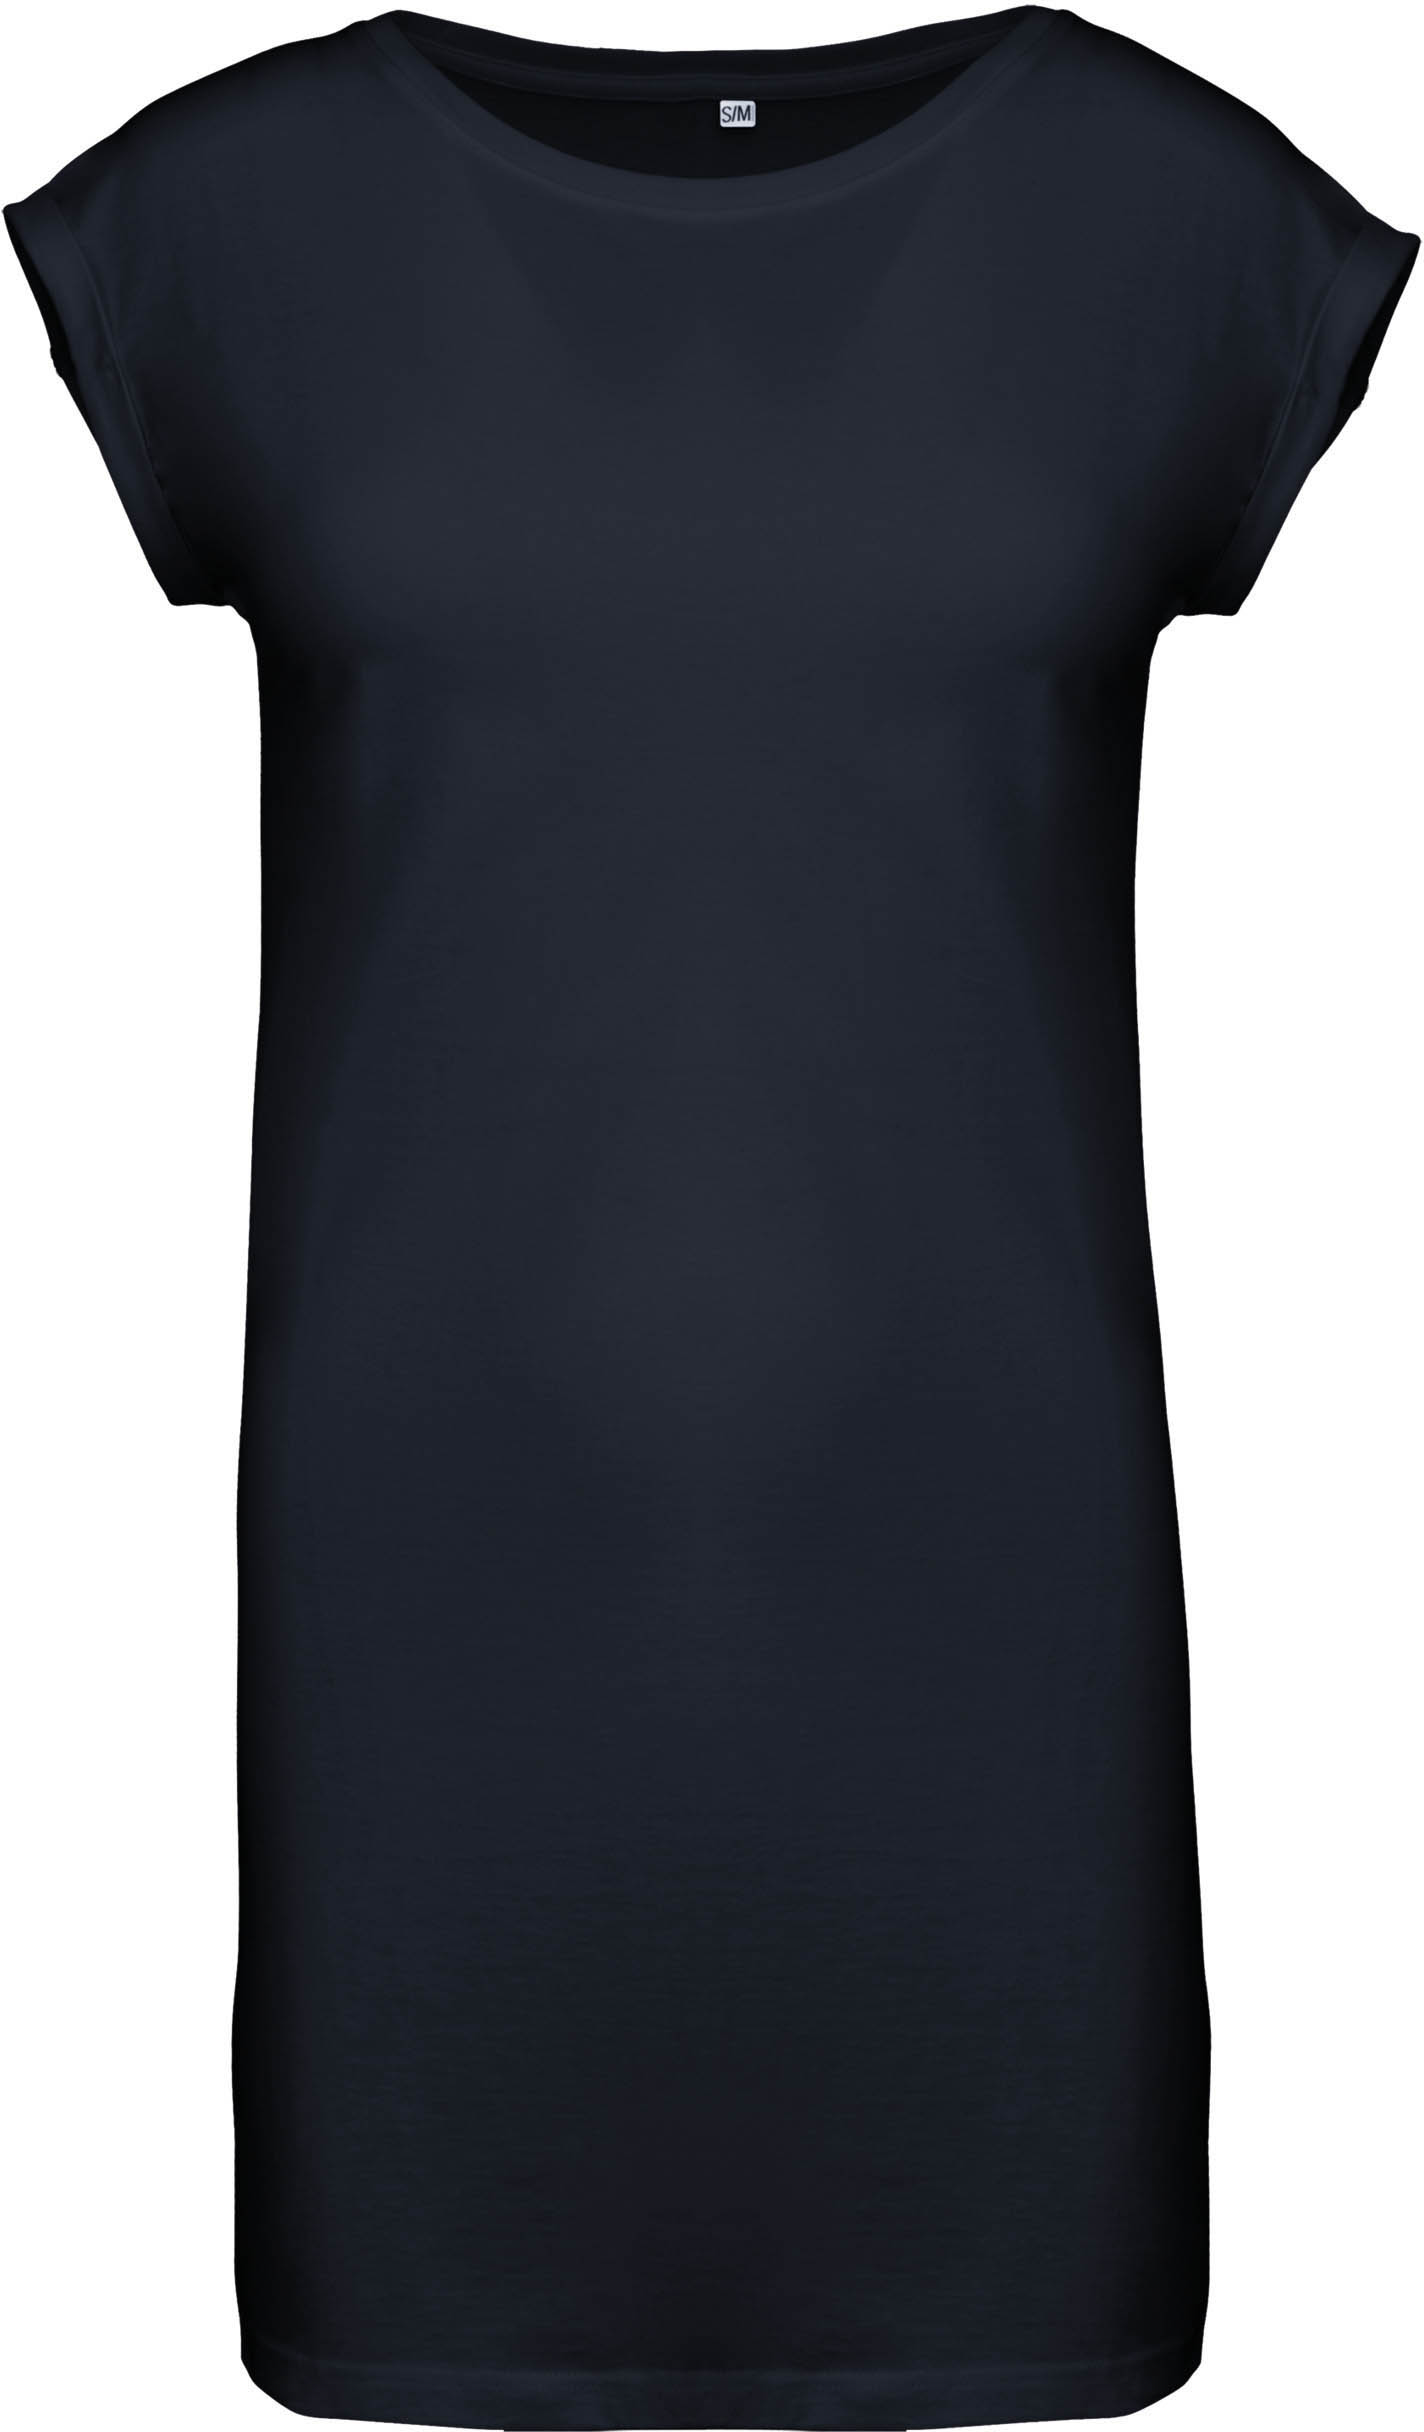 Tričkové šaty Barva: Navy, Velikost: S/M